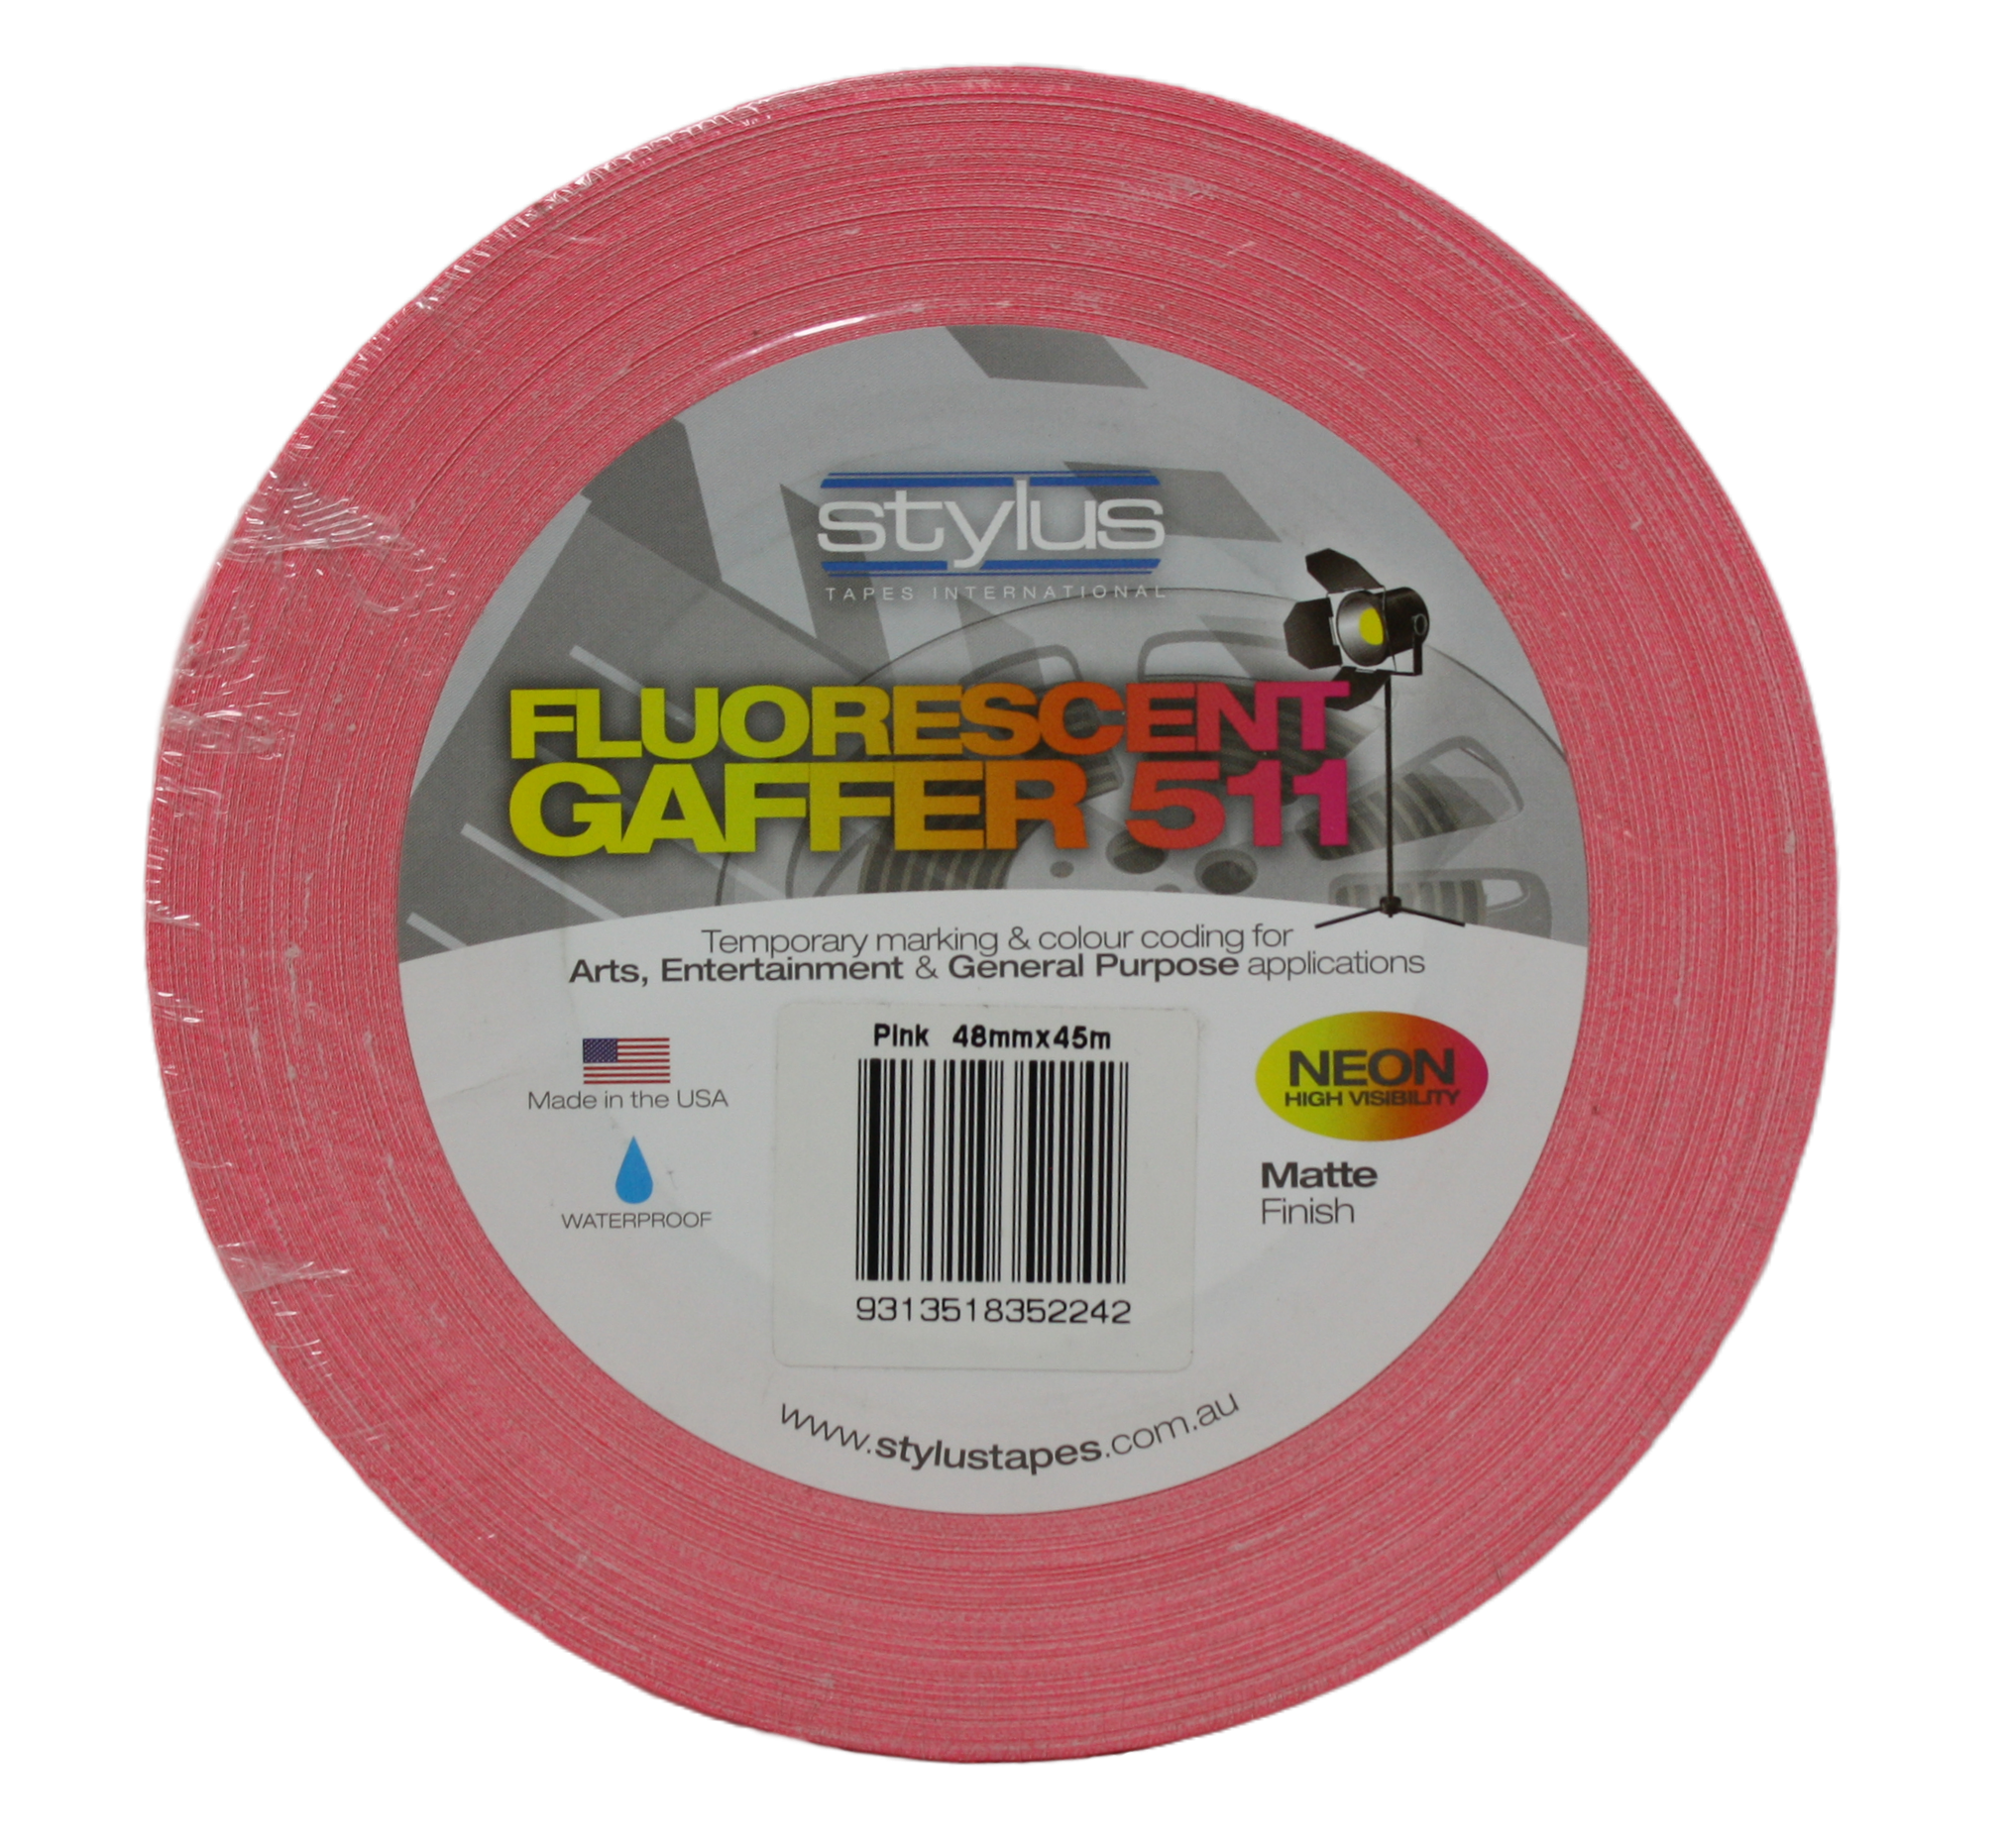 Styluss Fluorescent Gaffer Tape, 2" Pink, front view